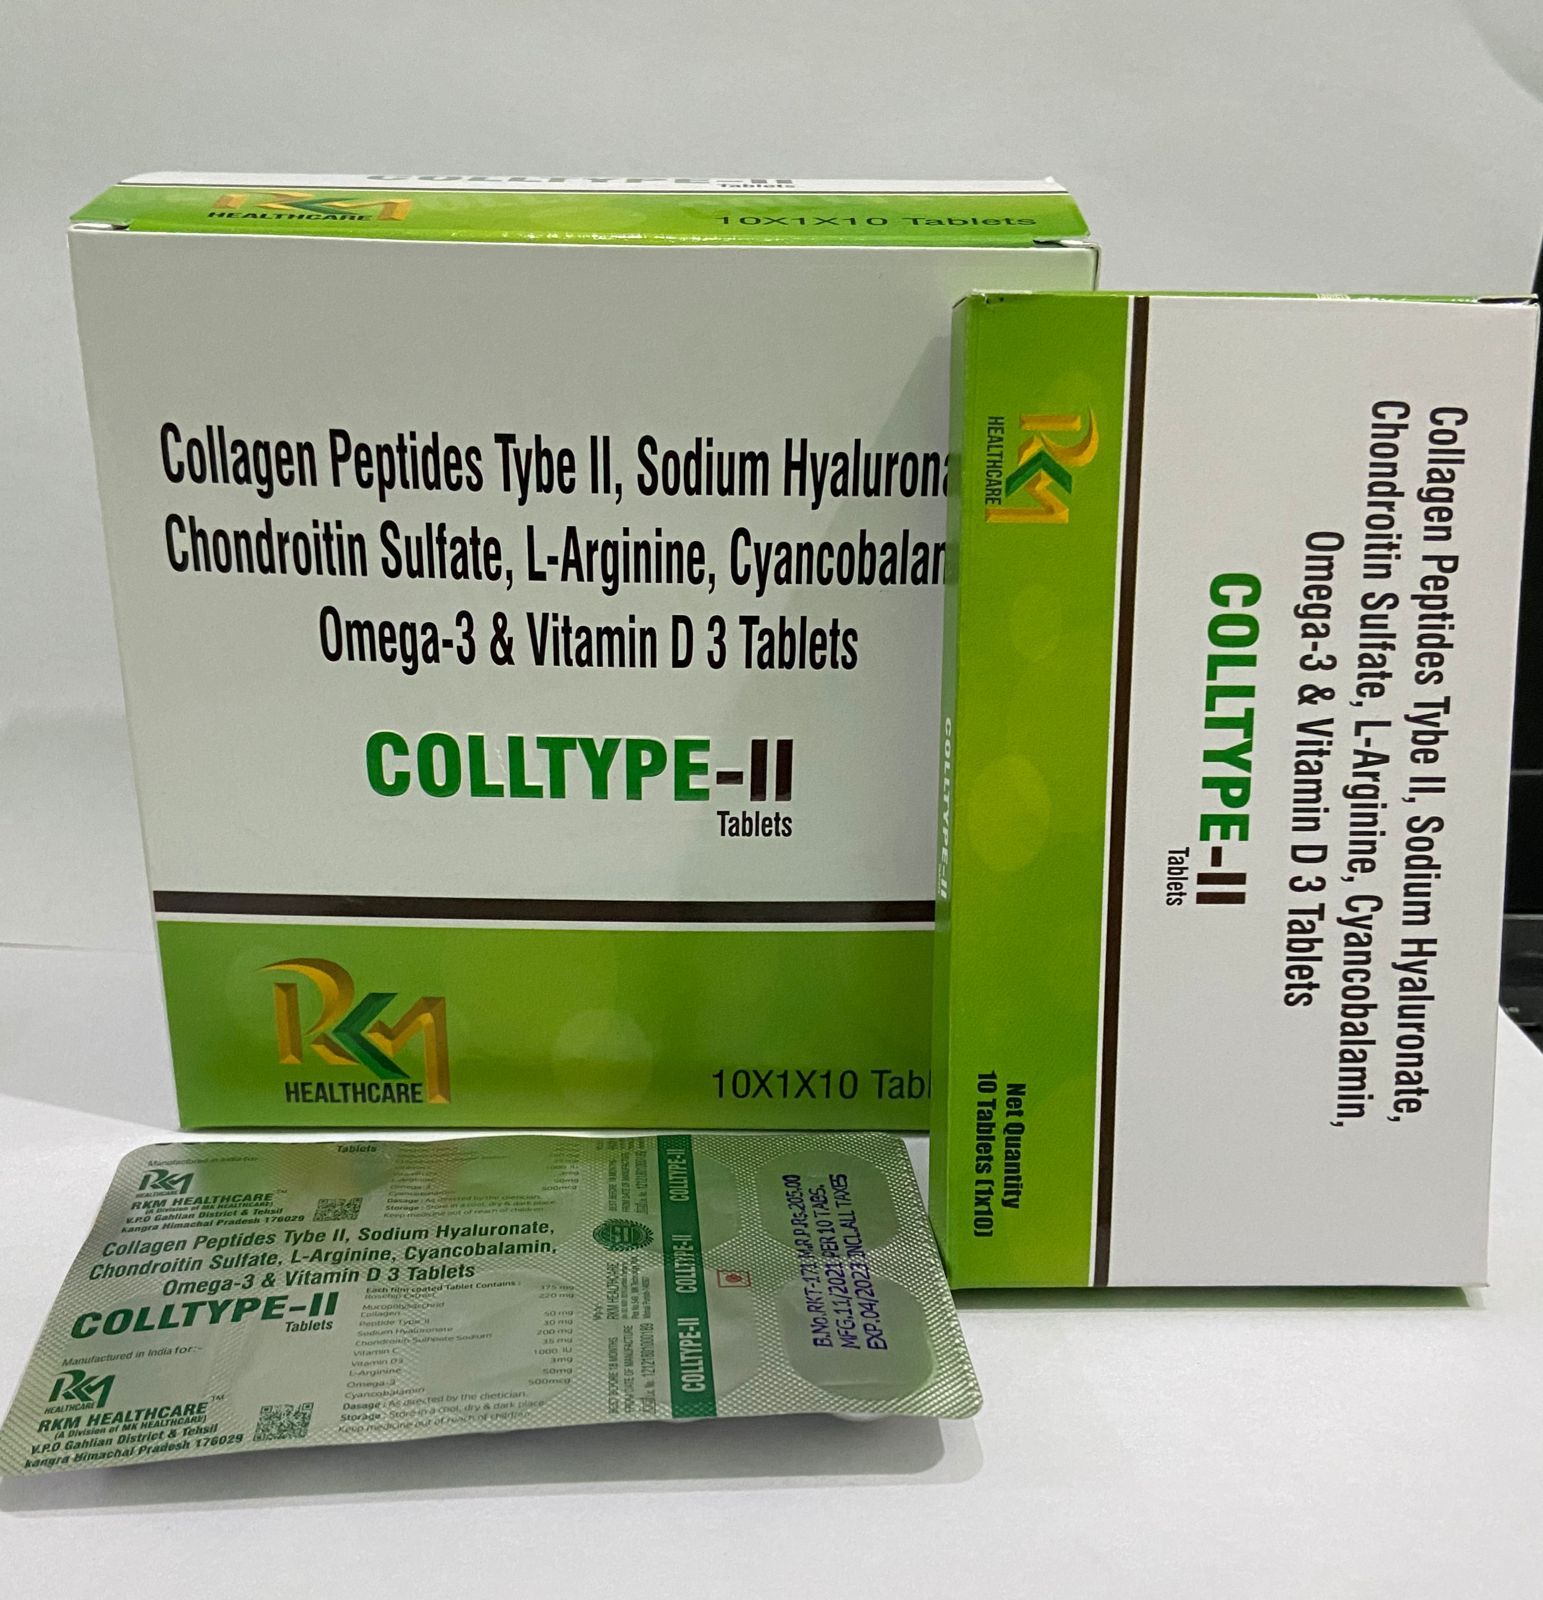 COLLTYPE-II